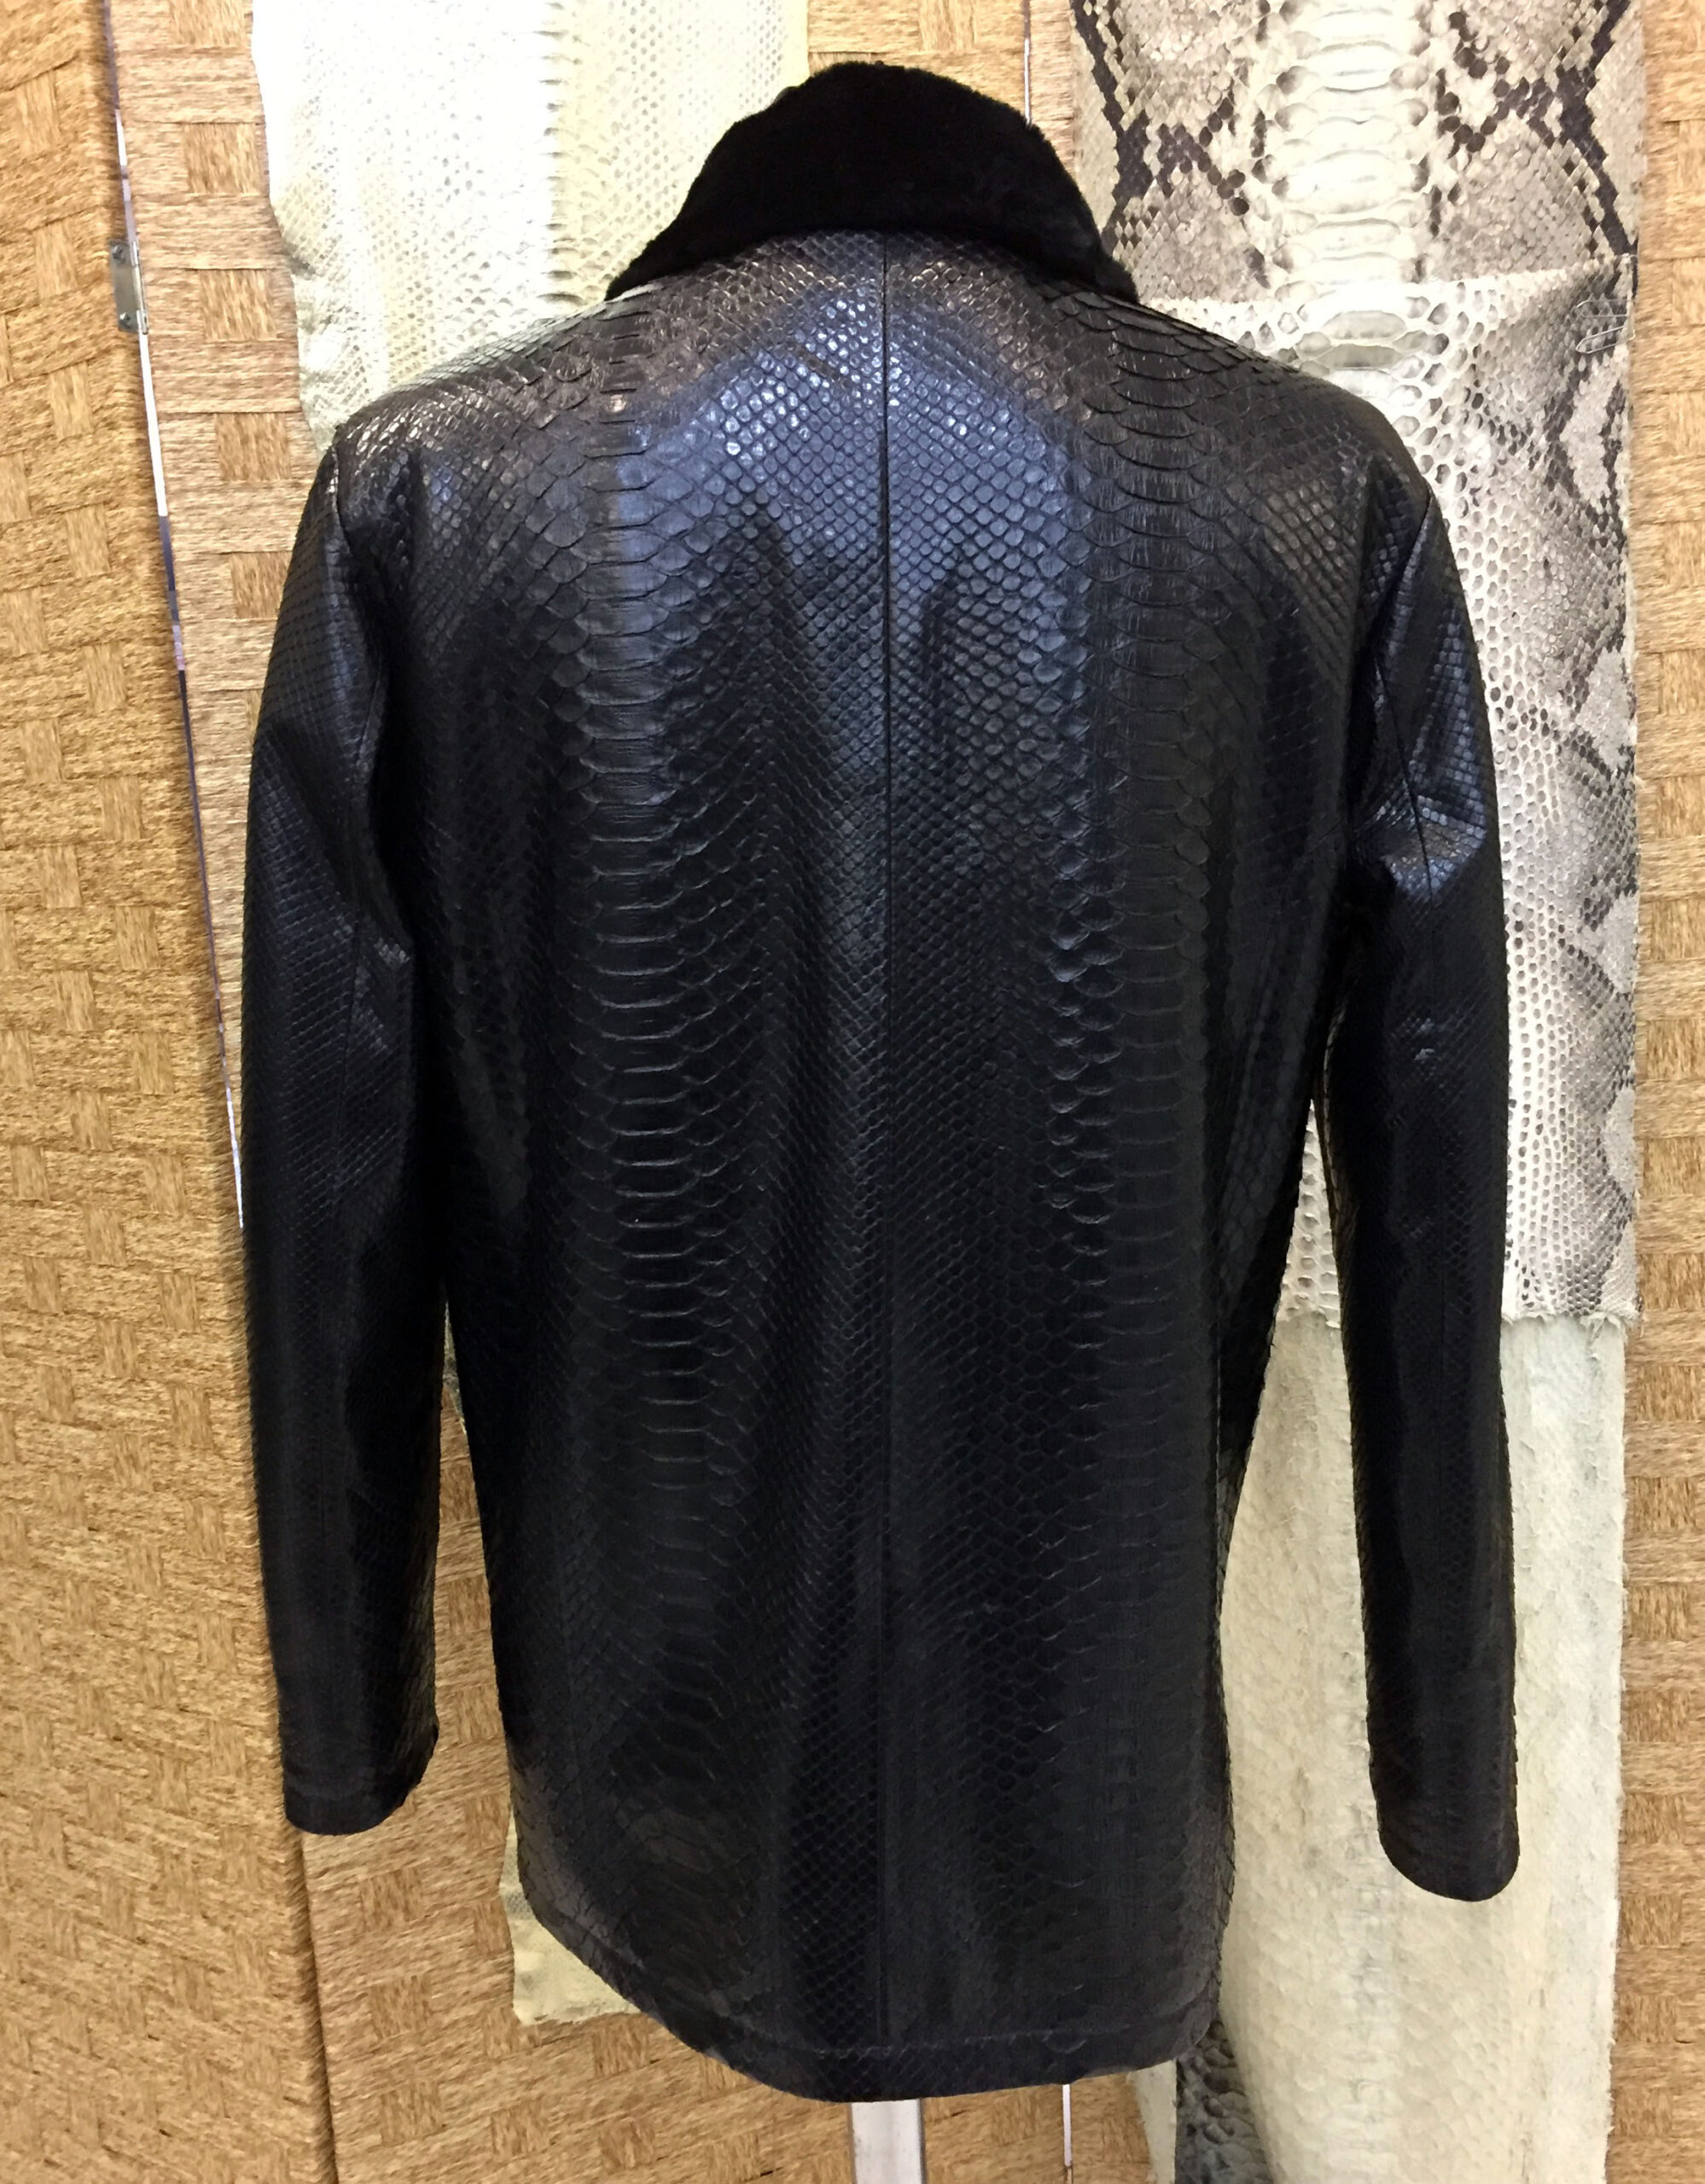 Mens Python Leather Coat - Leather Guys: Luxury Leather jackets